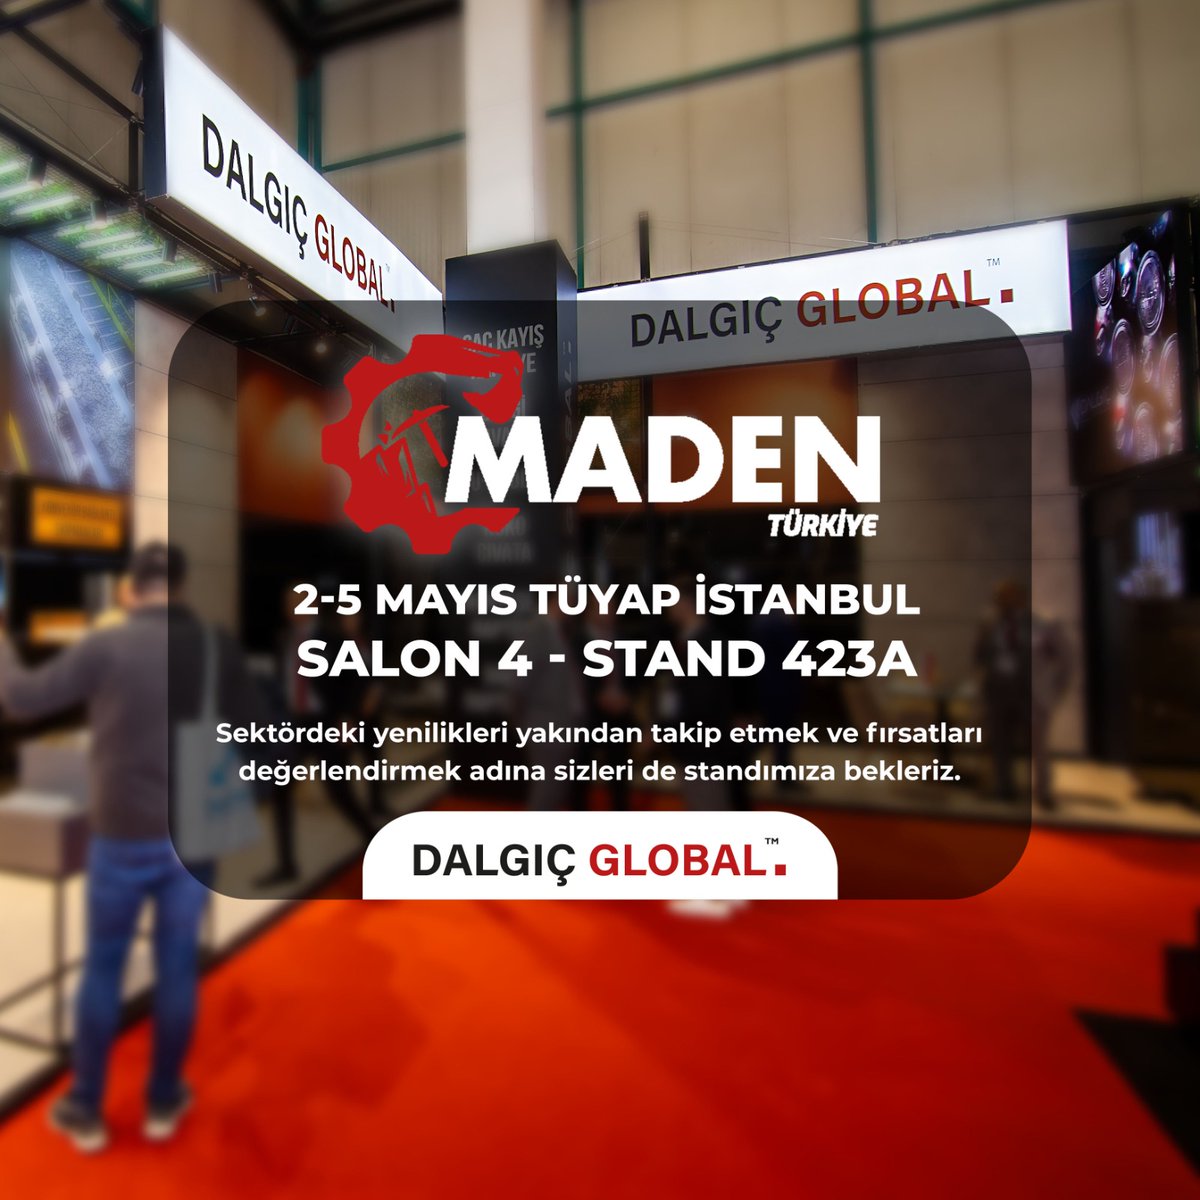 🌟 Tüyap İstanbul’da, 2-5 Mayıs tarihleri arasında gerçekleşecek olan Maden Türkiye Fuarı’nda biz de yerimizi aldık! Dalgıç Global olarak Salon 4, Stand 423A’da sizleri ağırlamaktan mutluluk duyacağız. 
#madenfuari #madentürkiye